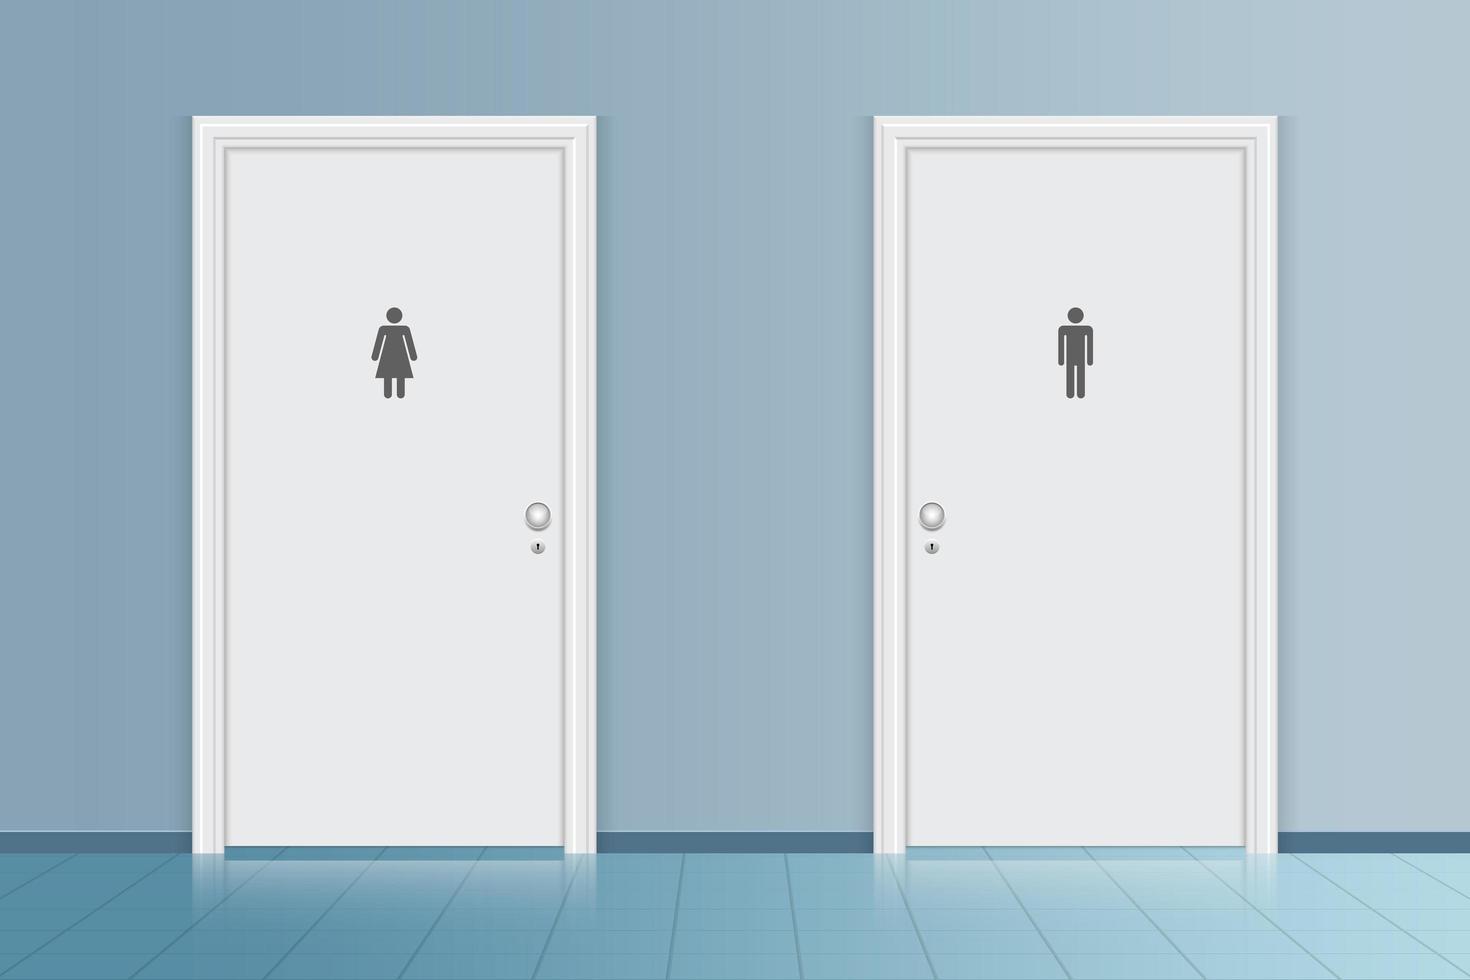 Bathroom toilet door vector design illustration